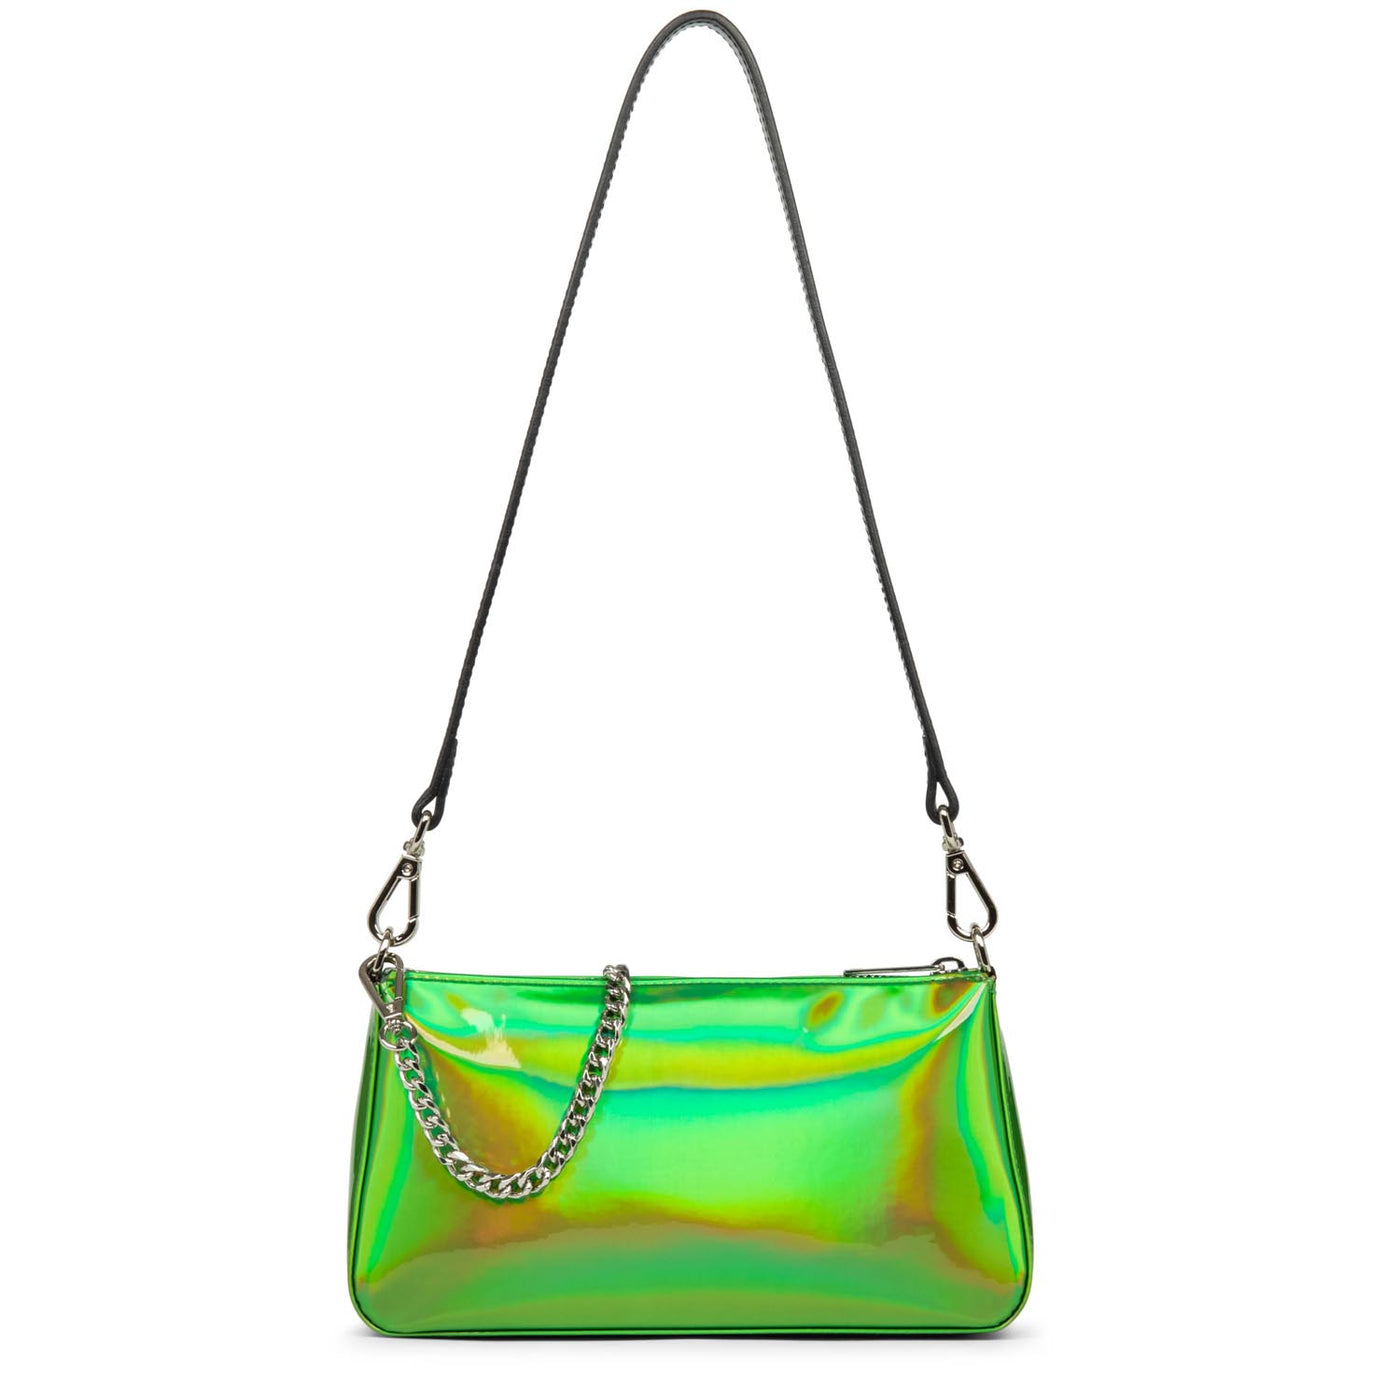 sac trotteur - glass irio #couleur_vert